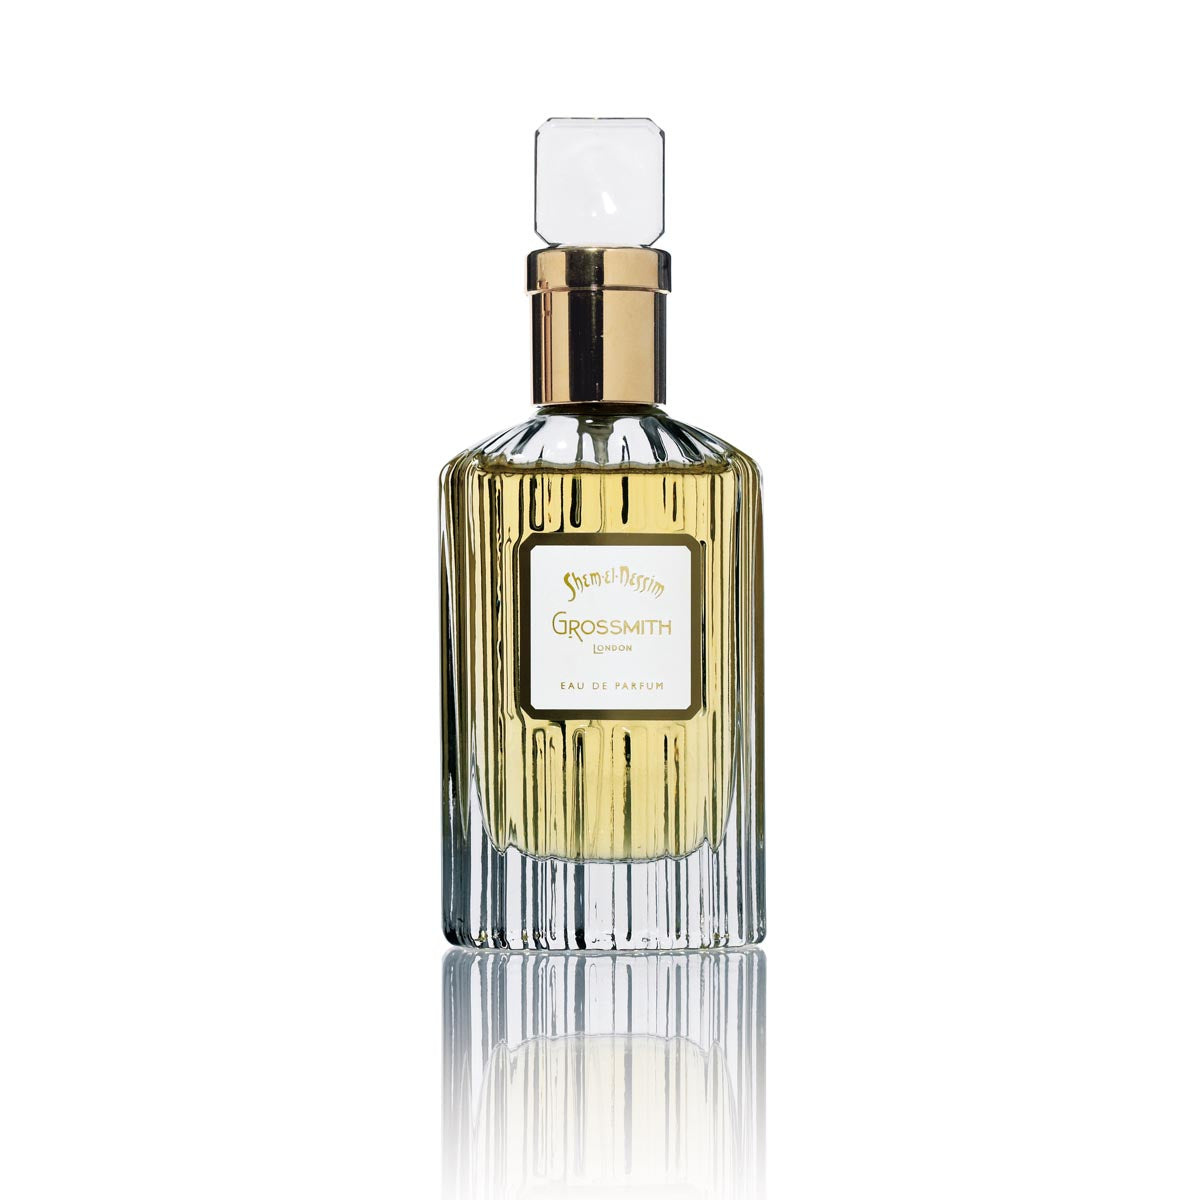 Shem El Nessim Eau de Parfum 50ml Bottle by Grossmith London